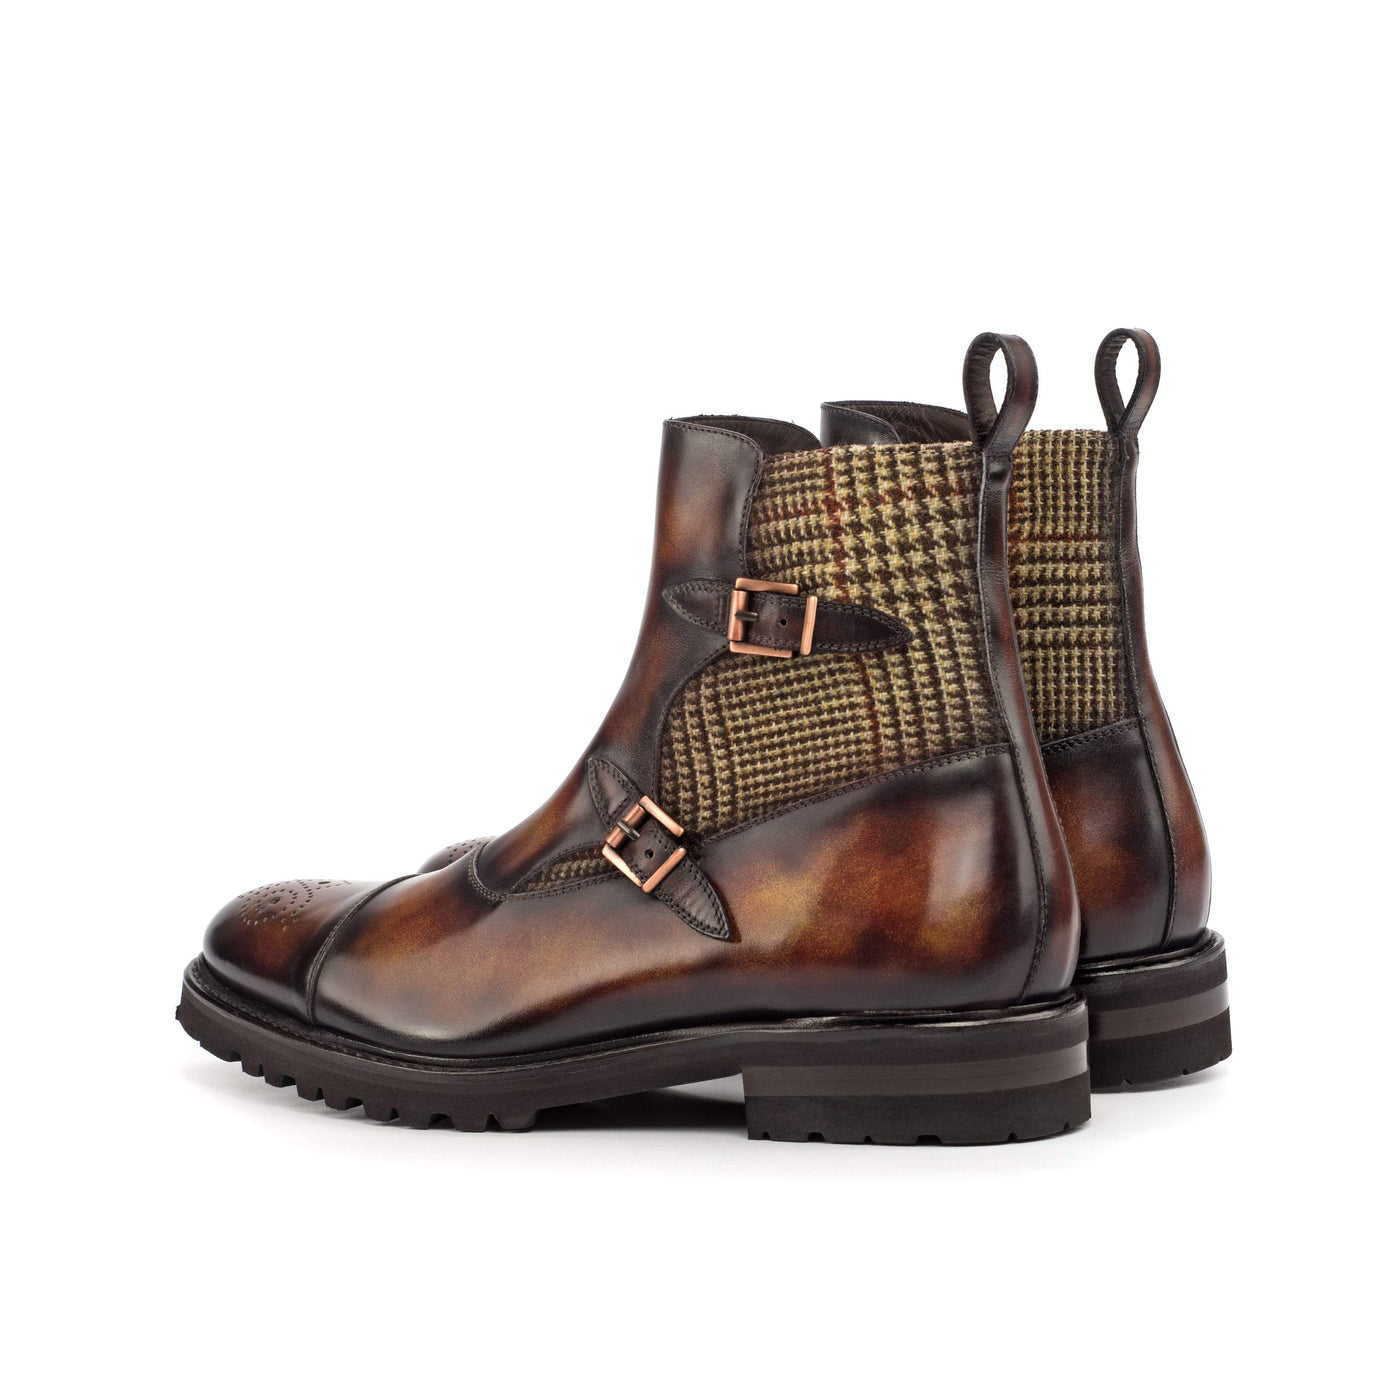 Men's Octavian Buckle Boots Patina Brown Burgundy 4564 4- MERRIMIUM